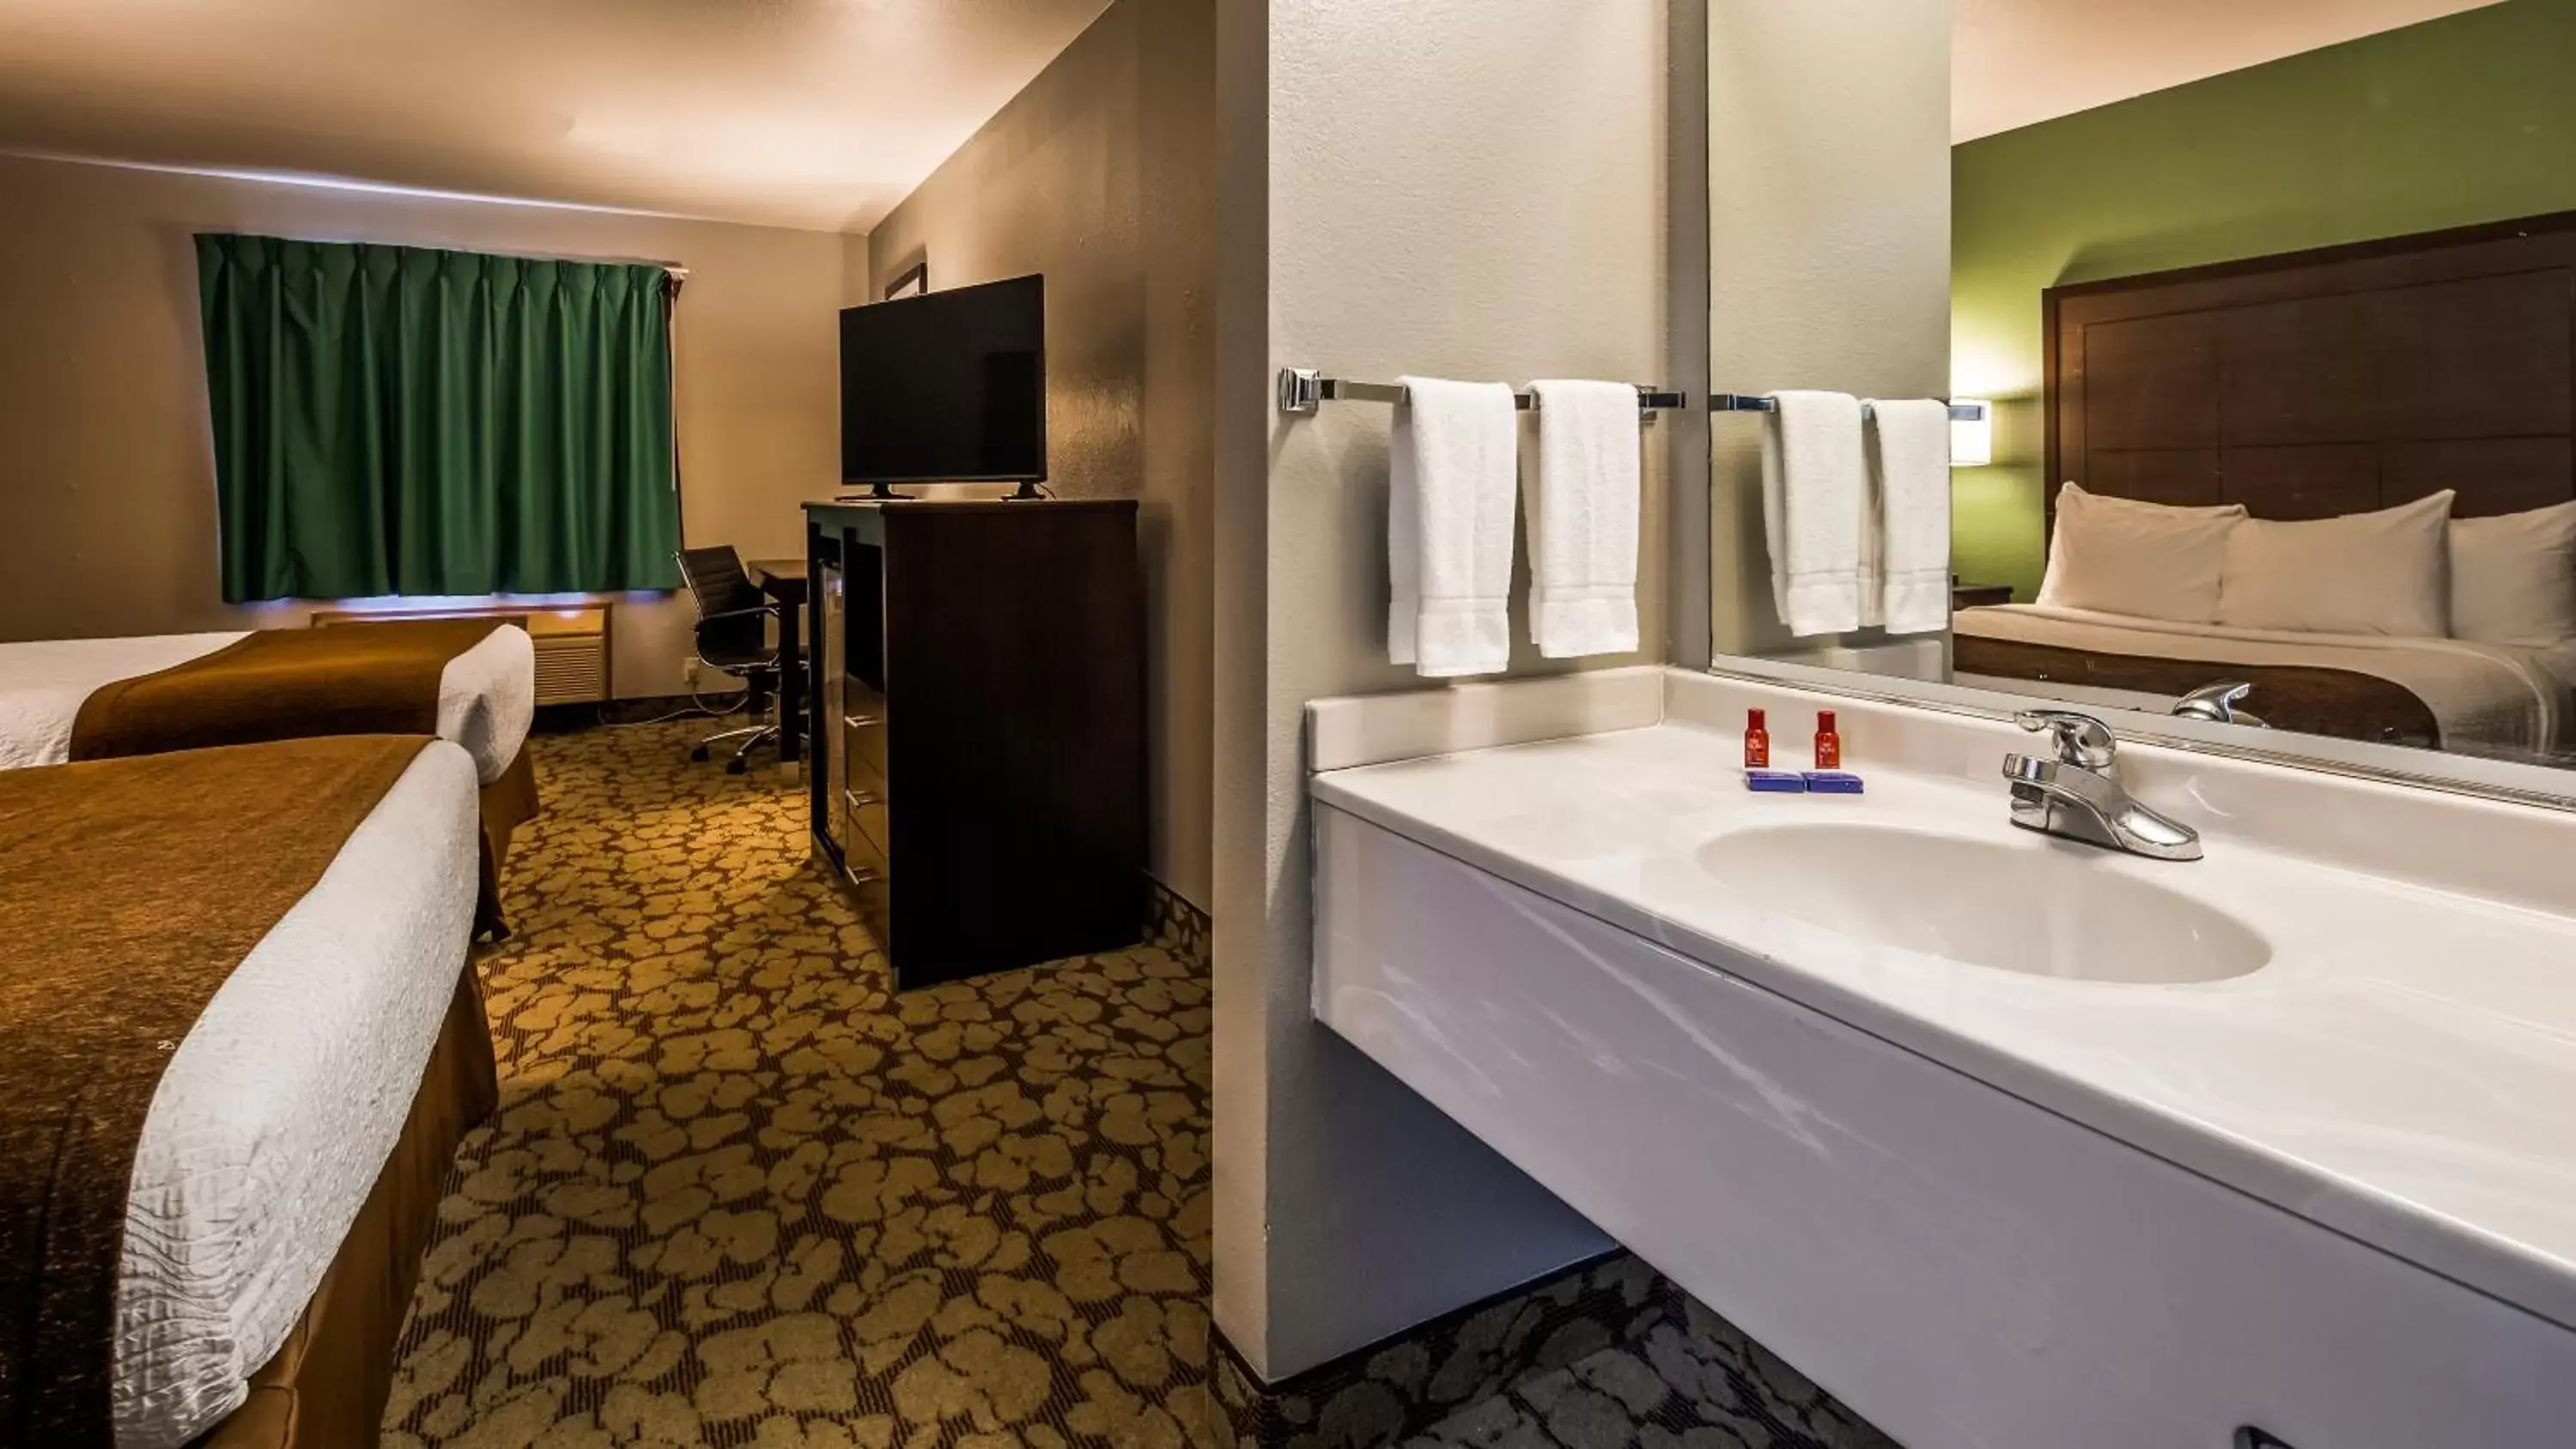 Bedroom, Bathroom in SureStay Plus Hotel by Best Western Bettendorf